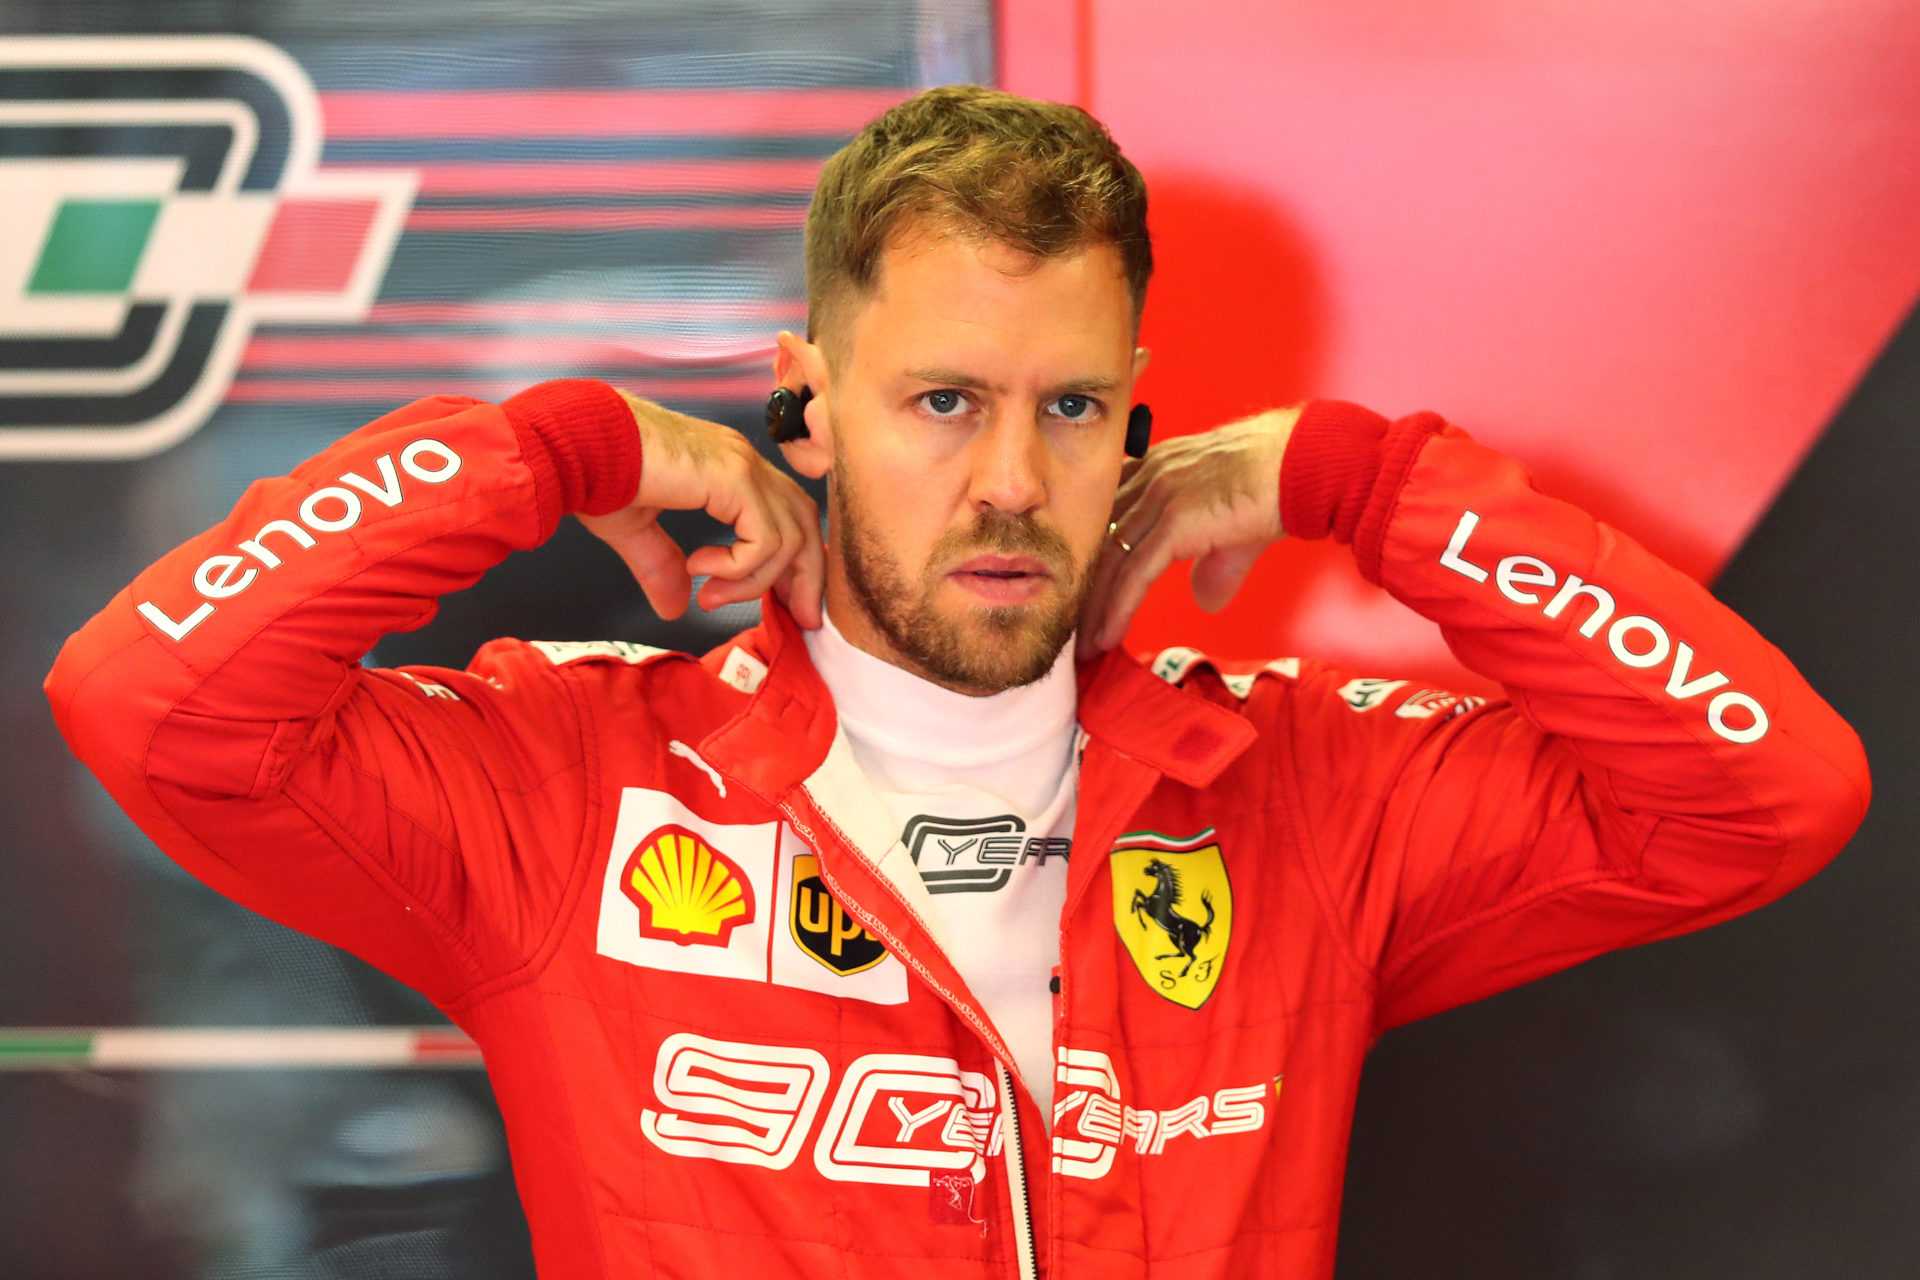 Un ancien pilote de F1 explique pourquoi la fouille de Binotto chez Sebastian Vettel est `` injuste ''